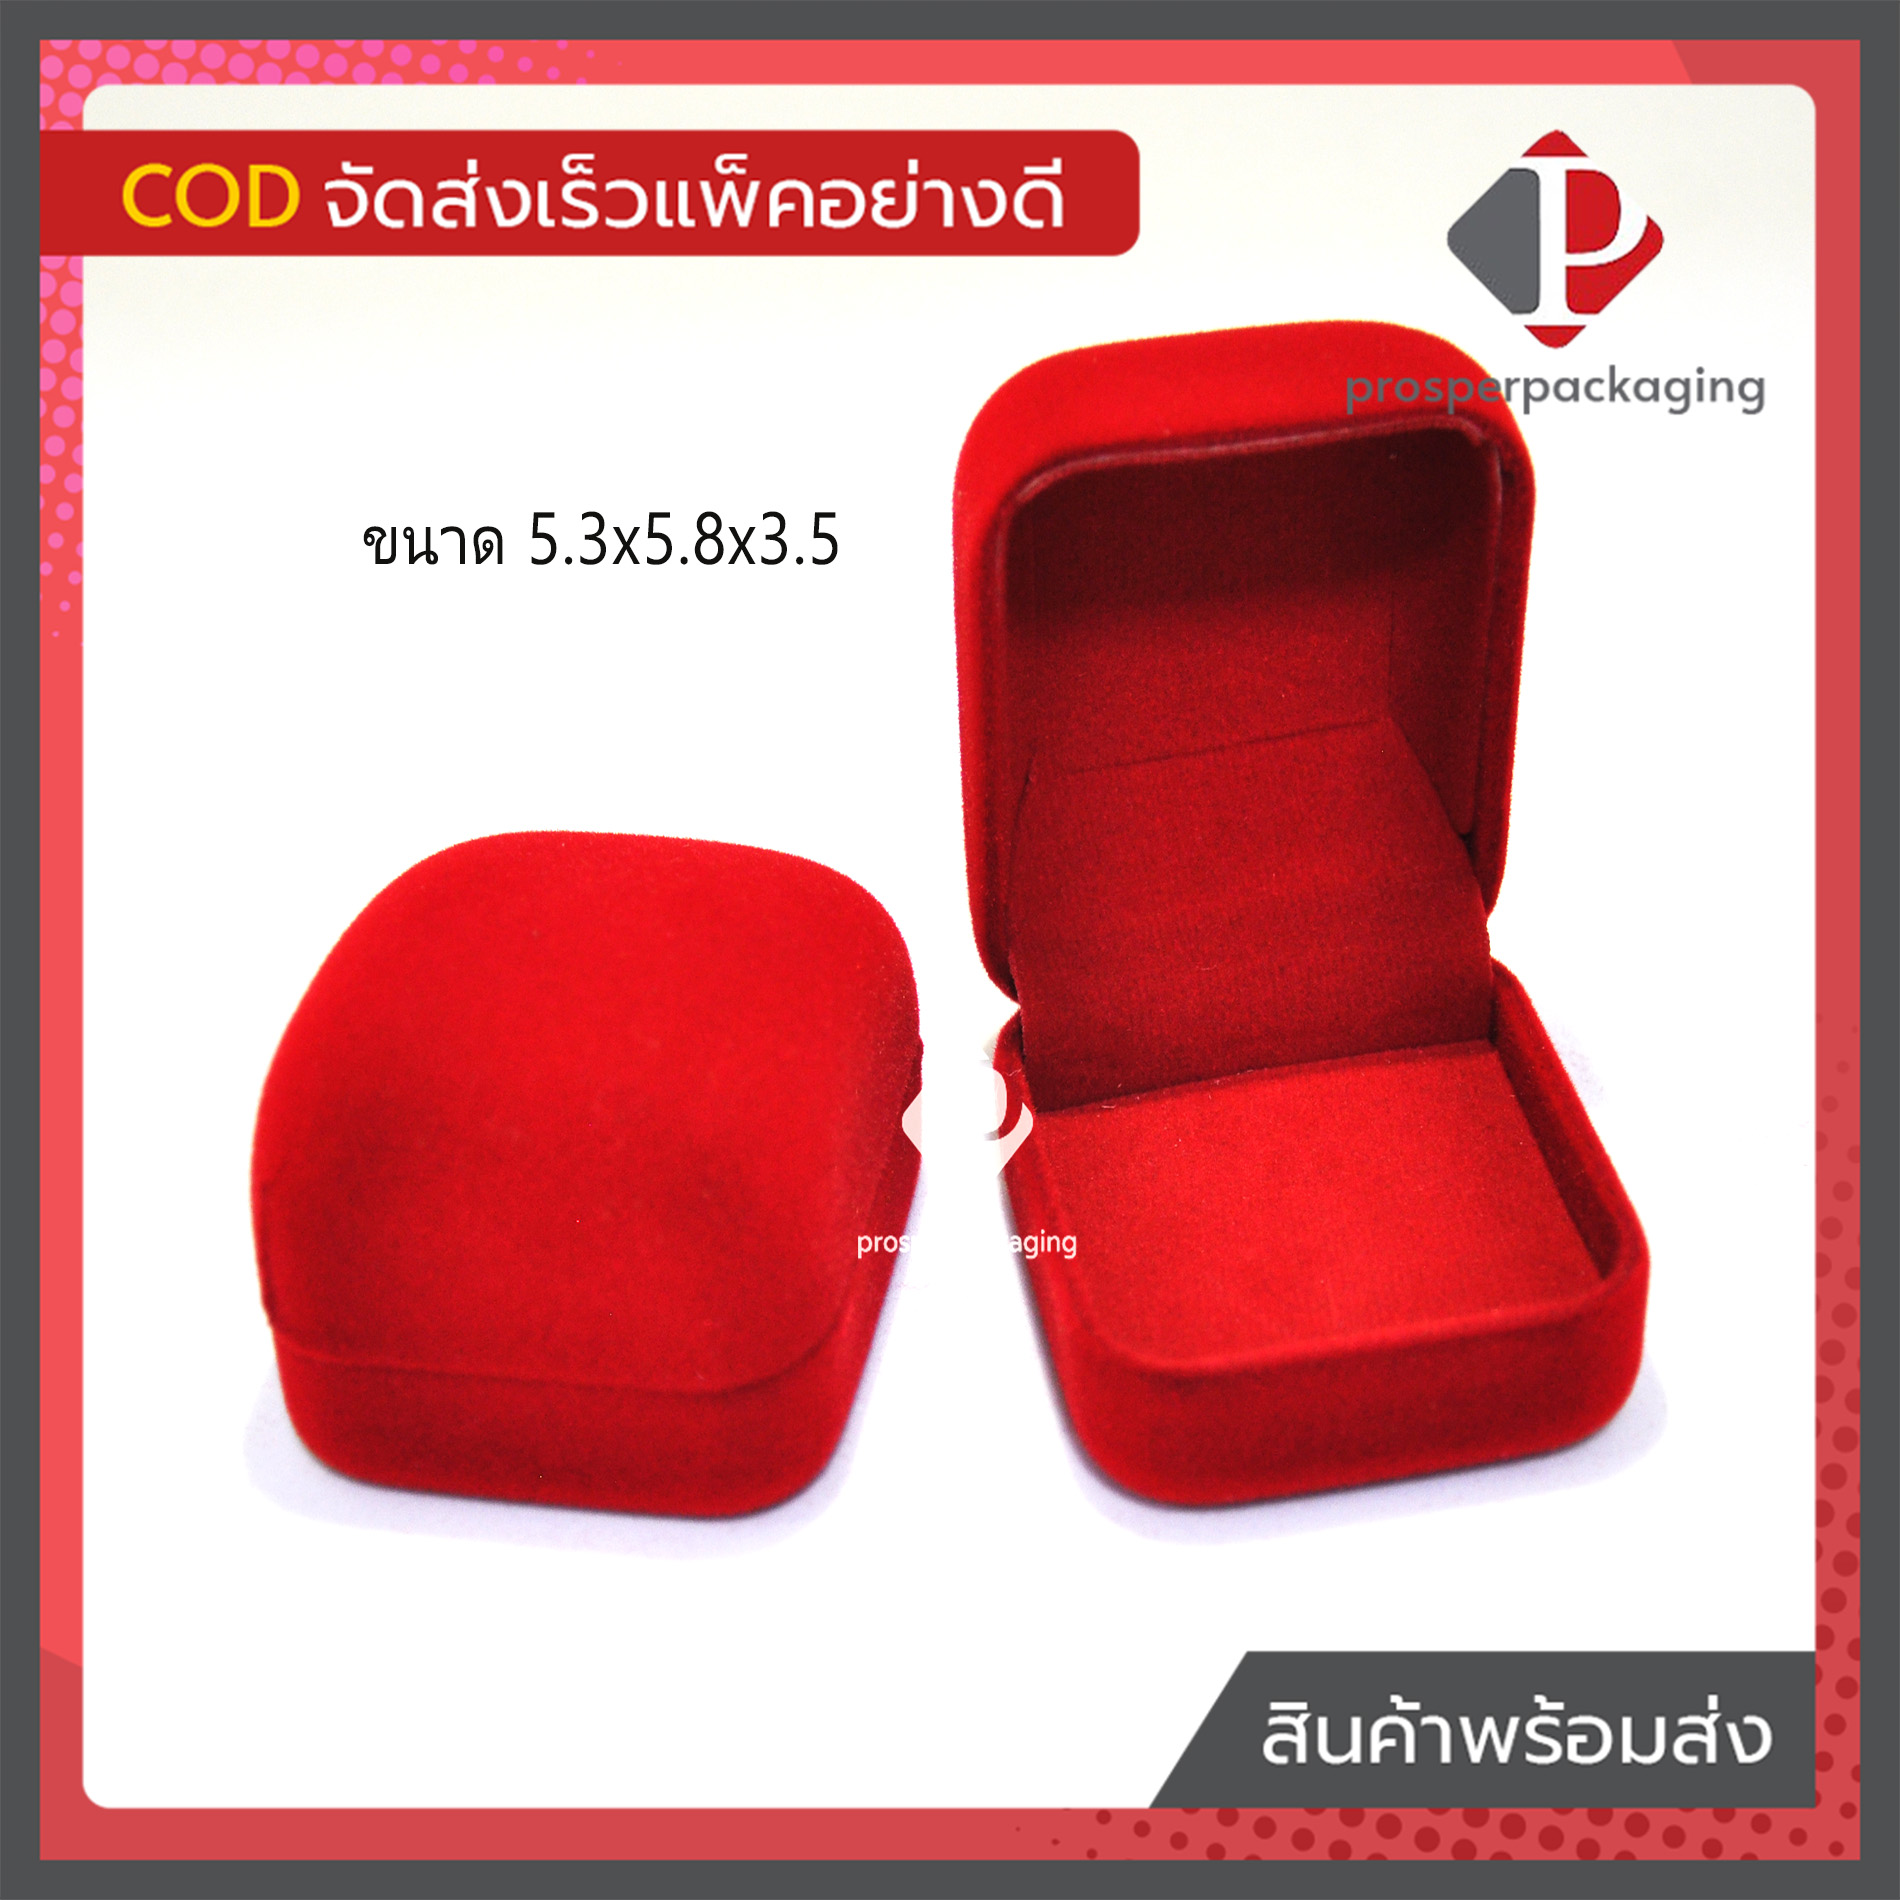 กล่องกำมะหยี่สีแดง ปูเรียบ ใส่ทองแท่ง ใส่พระ ใส่เครื่องประดับ หรือ อื่นๆ ขนาด 5.3x5.8x3.5 cm 1 ใบ code:J26เรียบ Prosper